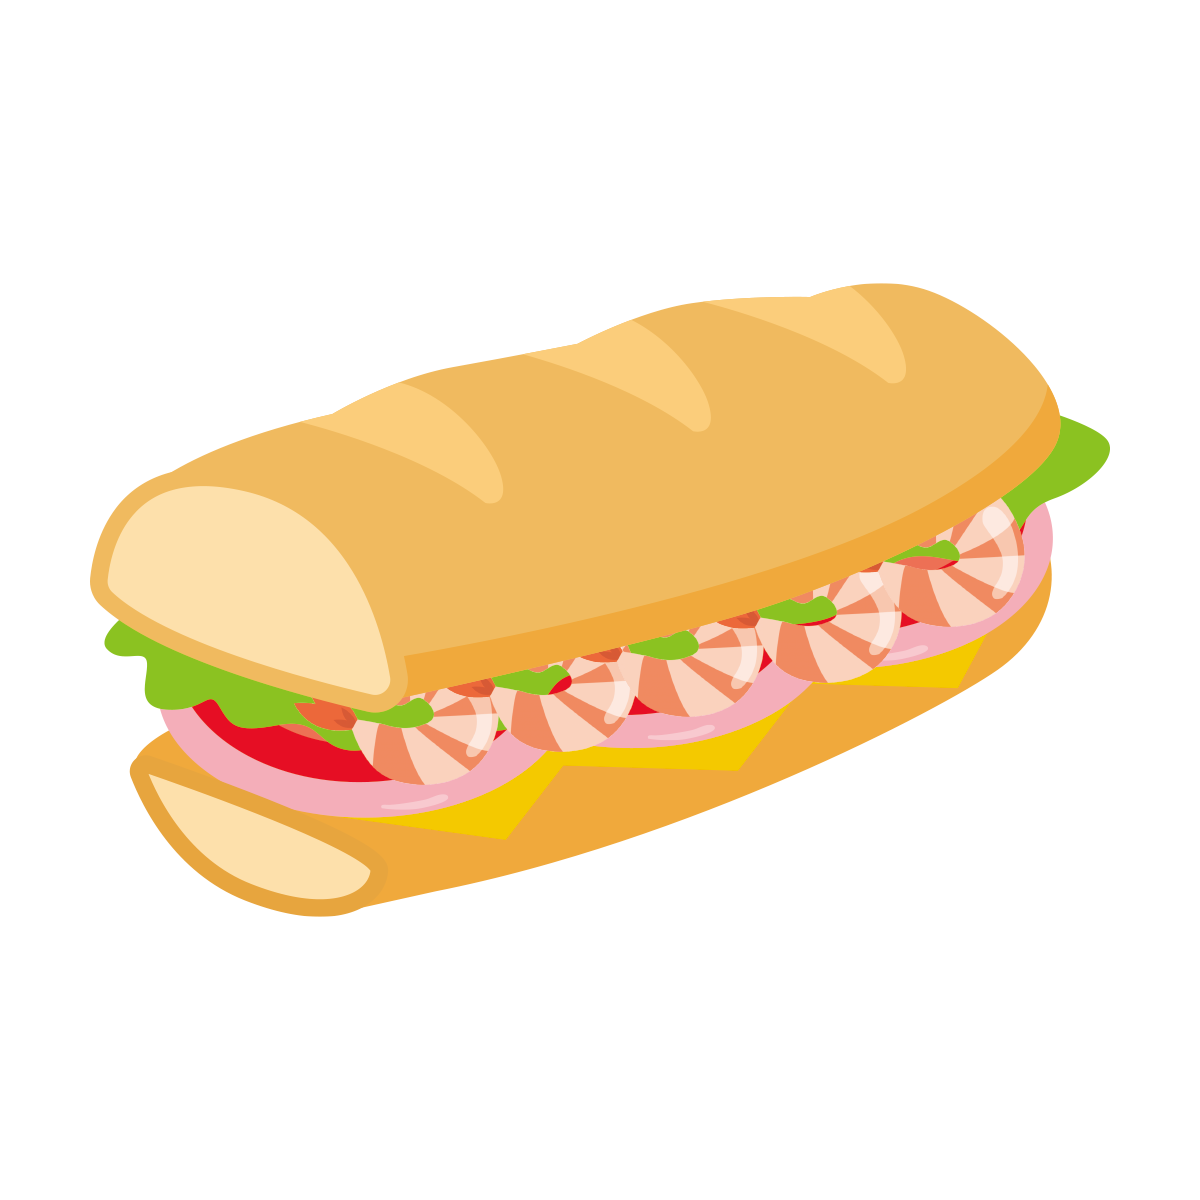 エビのサンドイッチのイラスト Onwaイラスト